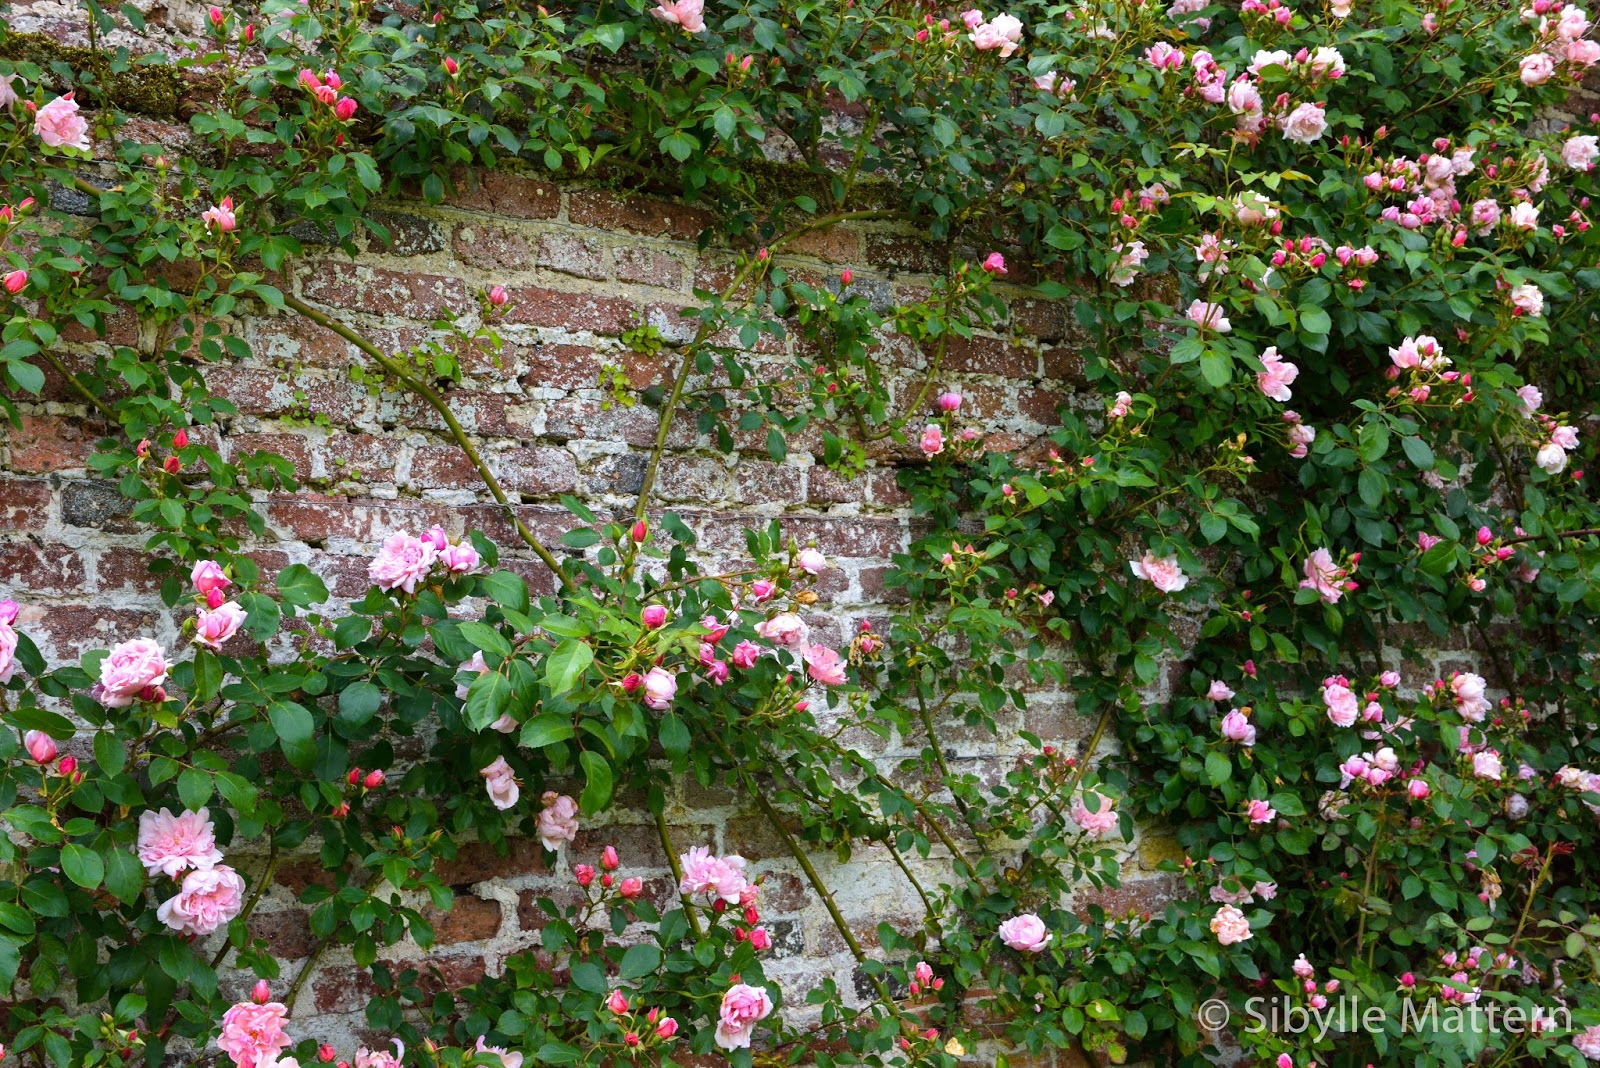 Sibylle's Blog @mohn-images.com: Visiting Sissinghurst Castle Garden